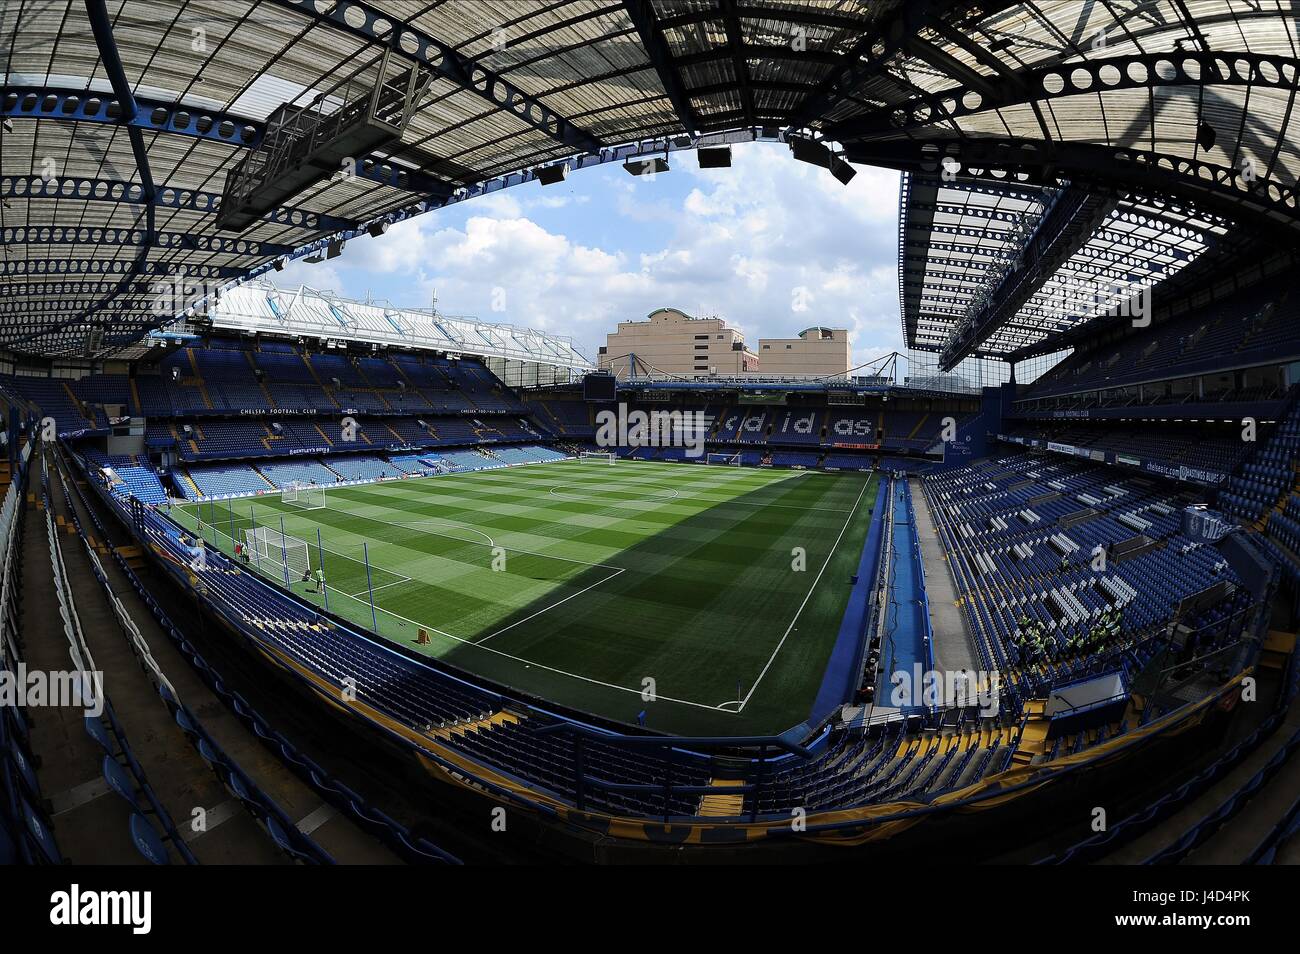 Une vue générale de l'IRB STAMFORD CHELSEA V SWANSEA CITY stade de Stamford Bridge Londres Angleterre 08 Août 2015 Banque D'Images